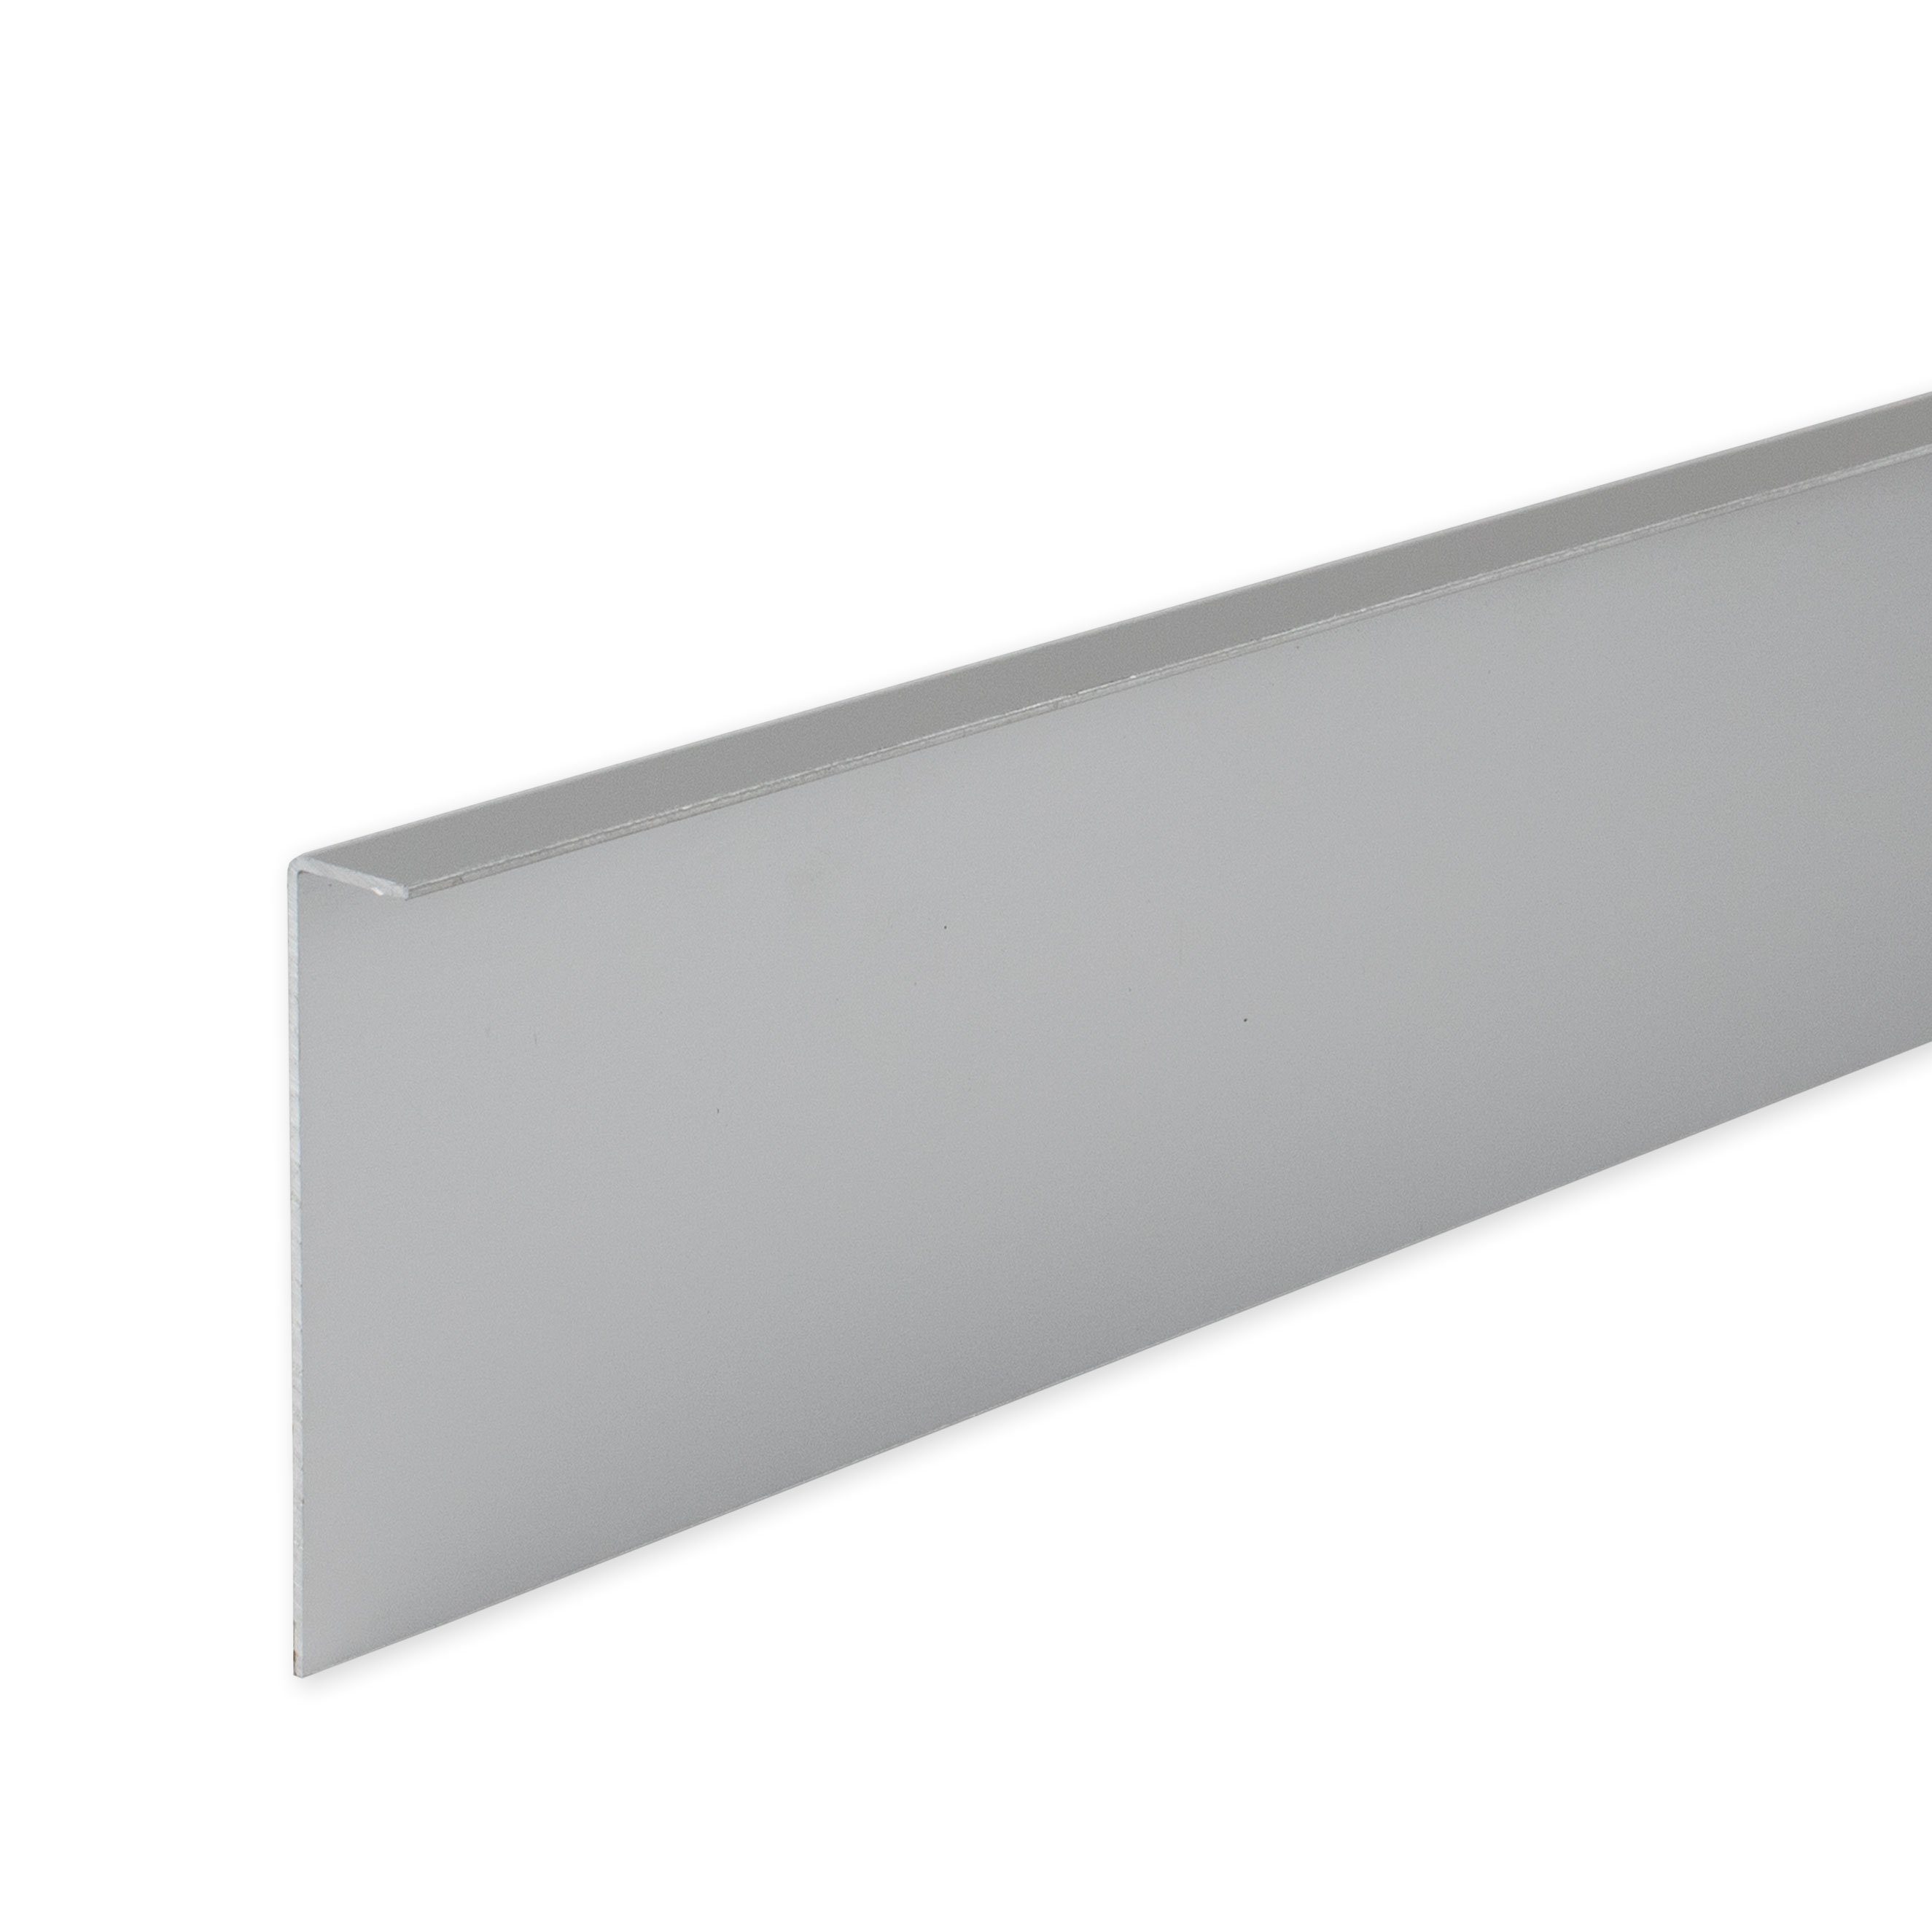 PROVISTON Sockelleiste Aluminium, 60 x 4 x 2500 mm, Silber, Metall Sockelleiste